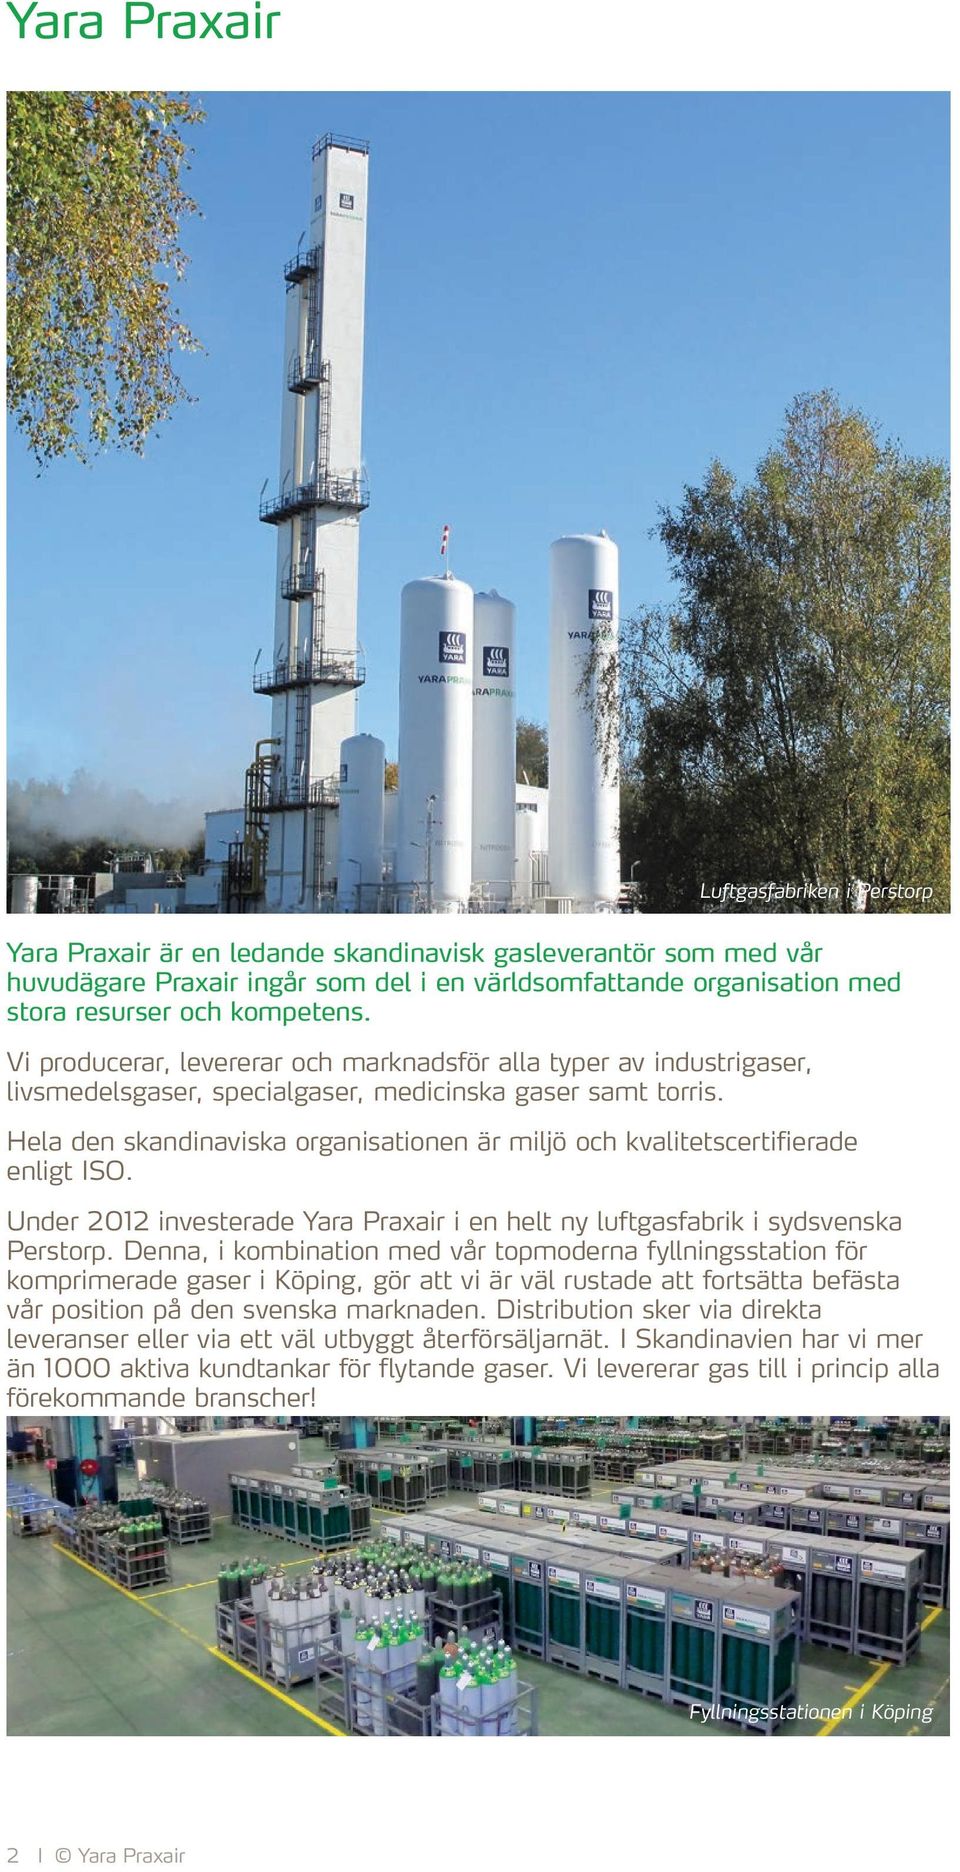 Hela den skandinaviska organisationen är miljö och kvalitetscertifierade enligt ISO. Under 2012 investerade Yara Praxair i en helt ny luftgasfabrik i sydsvenska Perstorp.